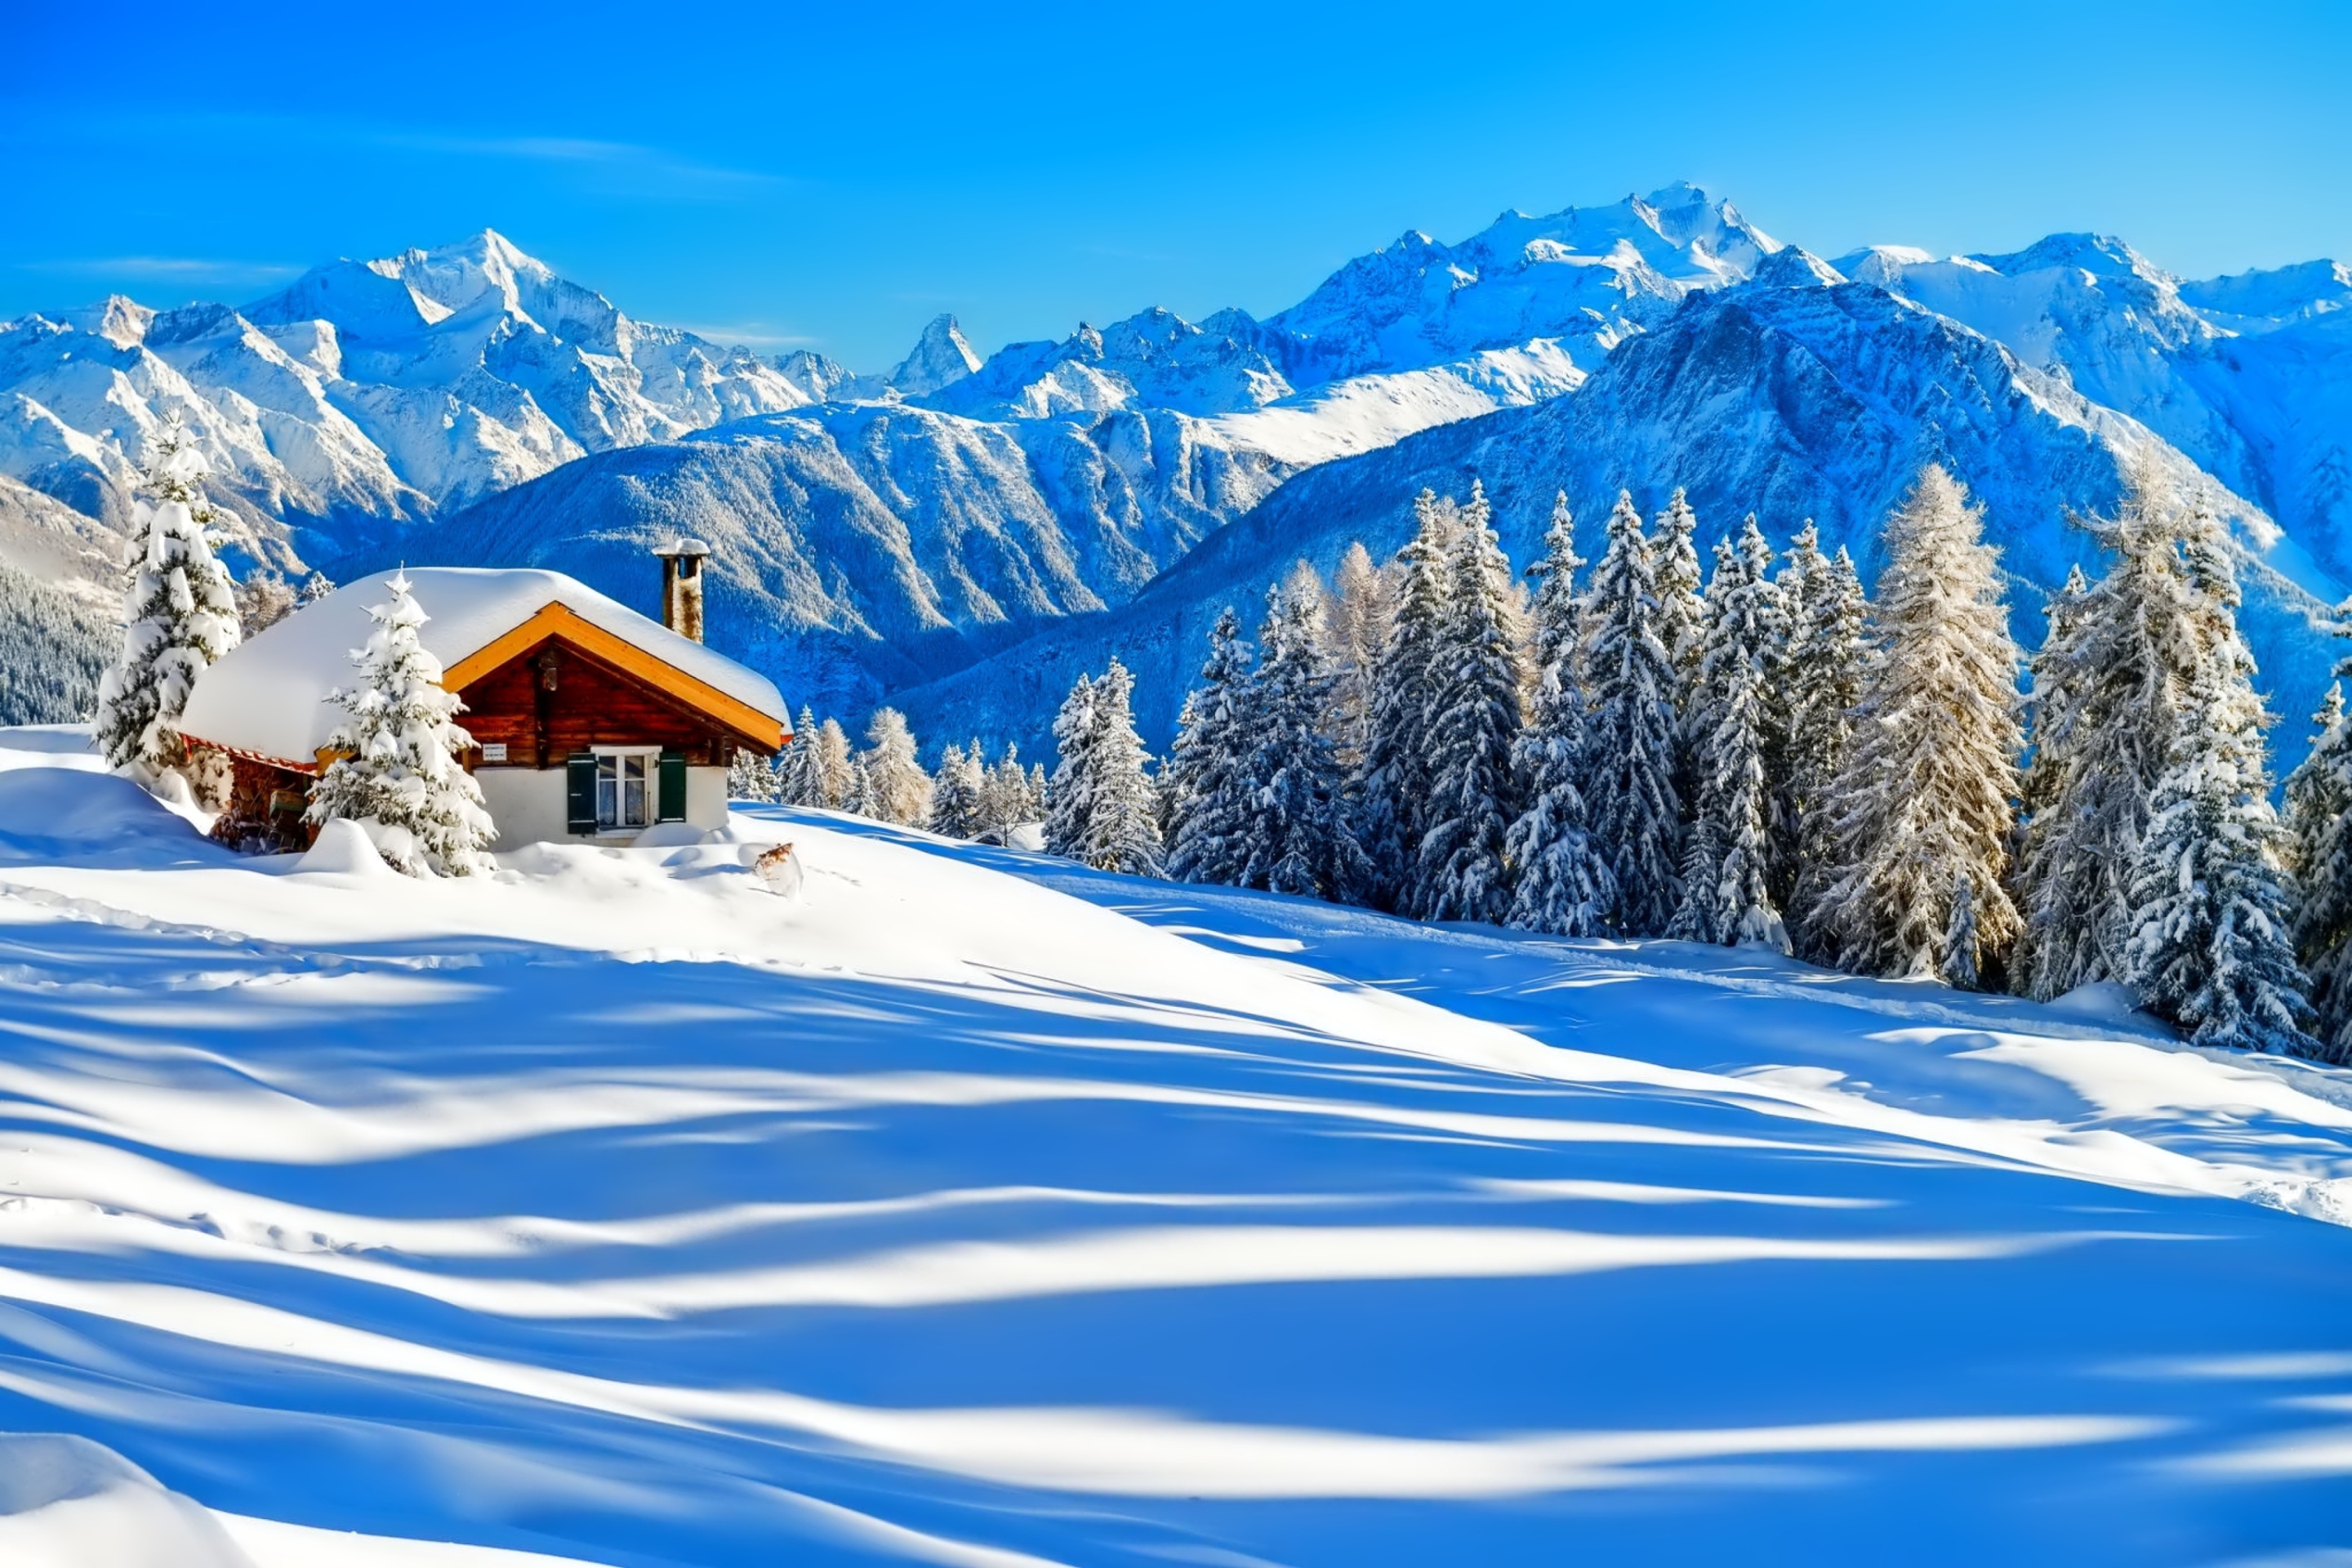 Обои Switzerland Alps in Winter 2880x1920